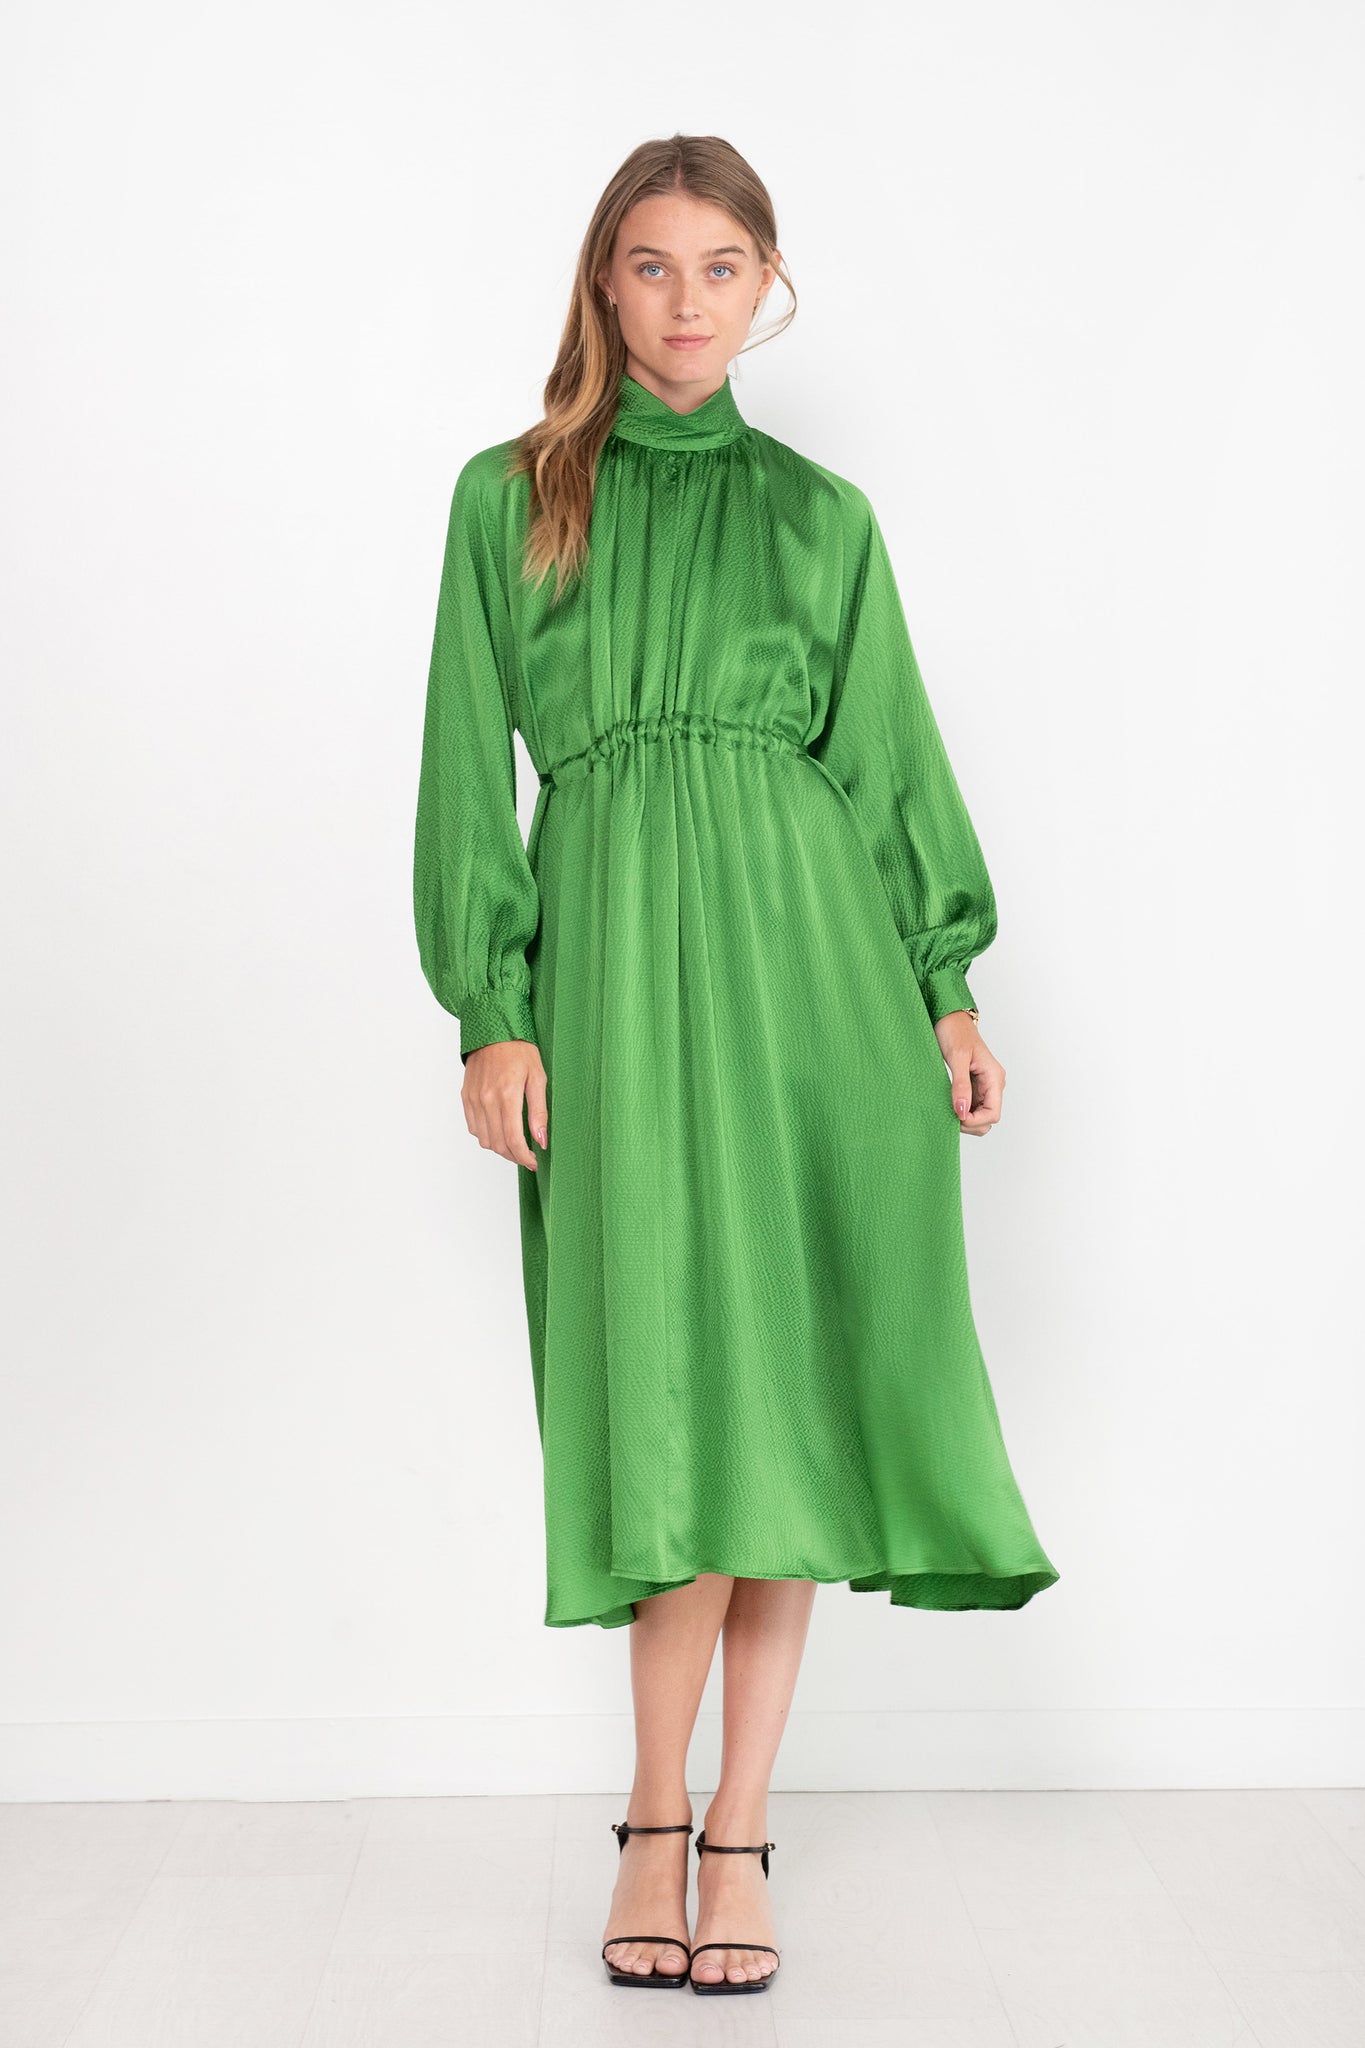 Rachel Comey - Hanley Dress, Green